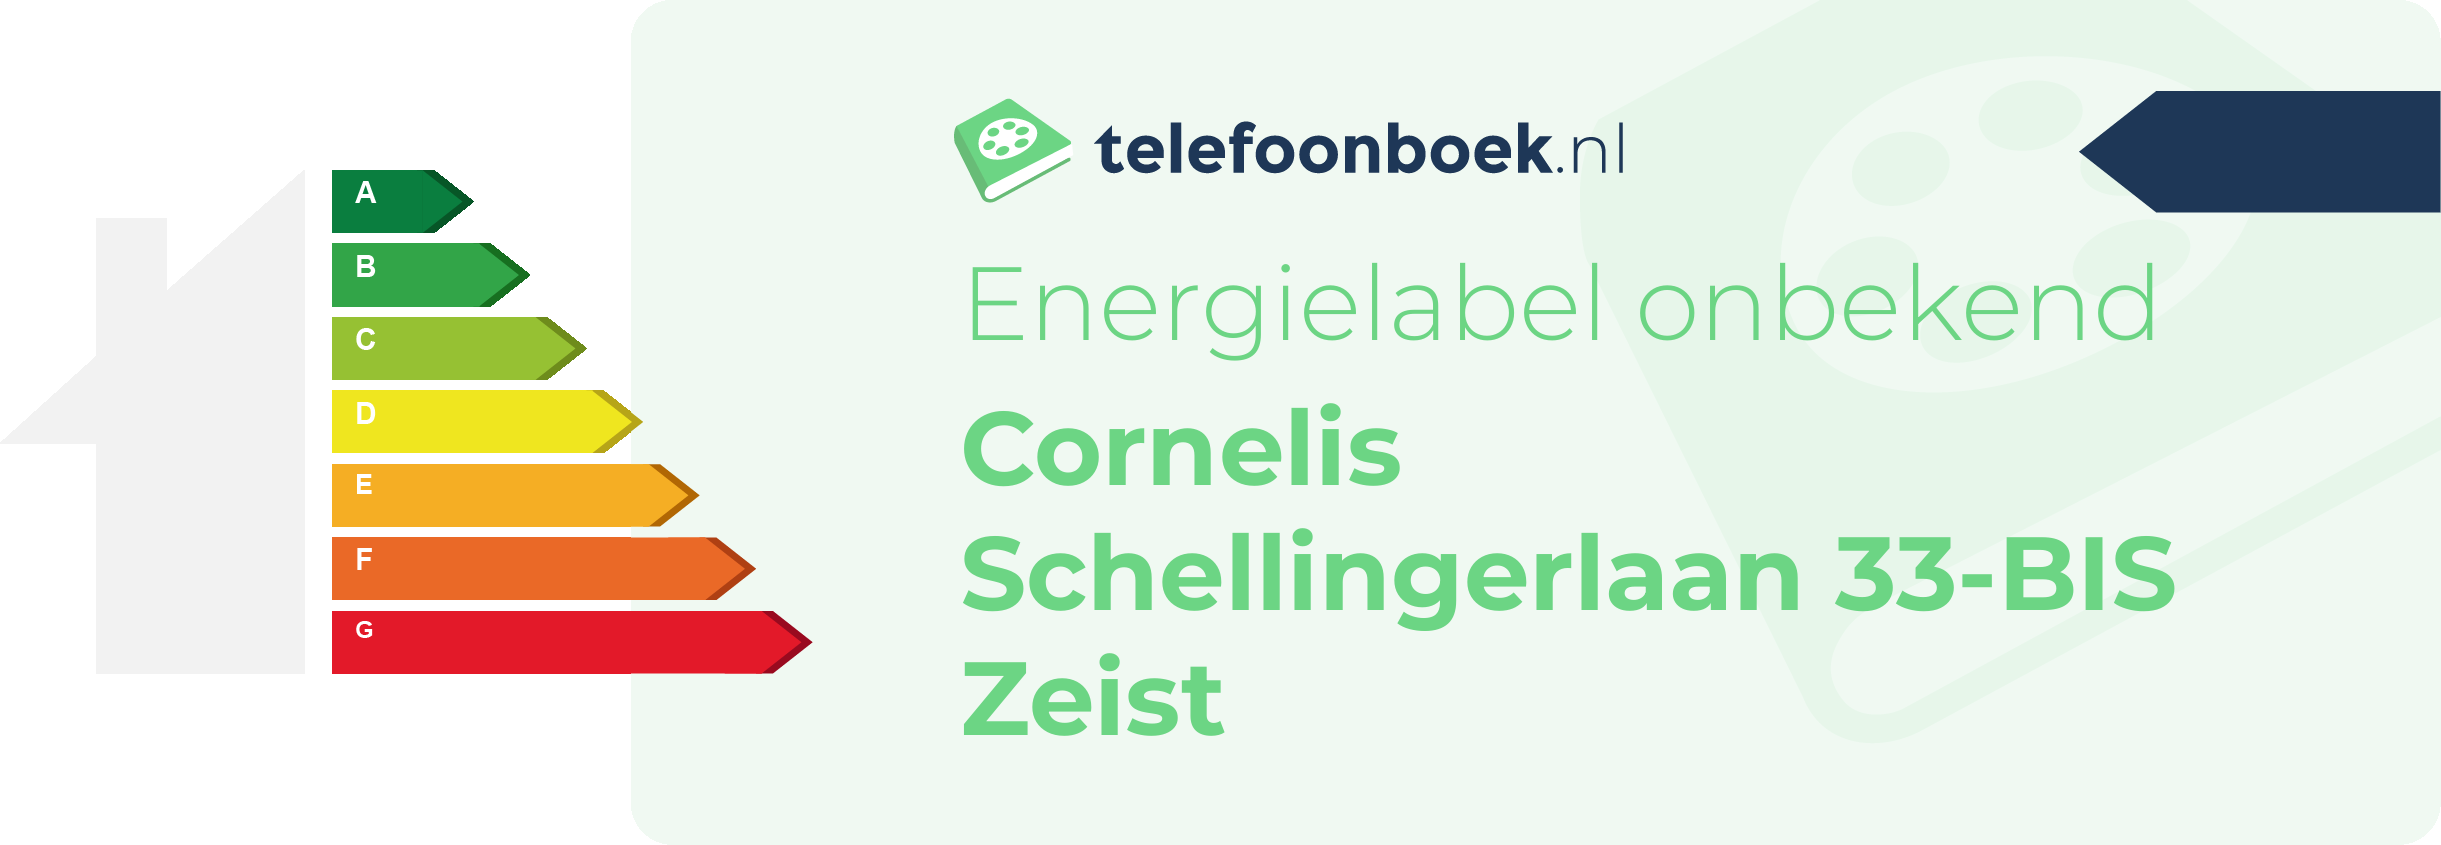 Energielabel Cornelis Schellingerlaan 33-BIS Zeist